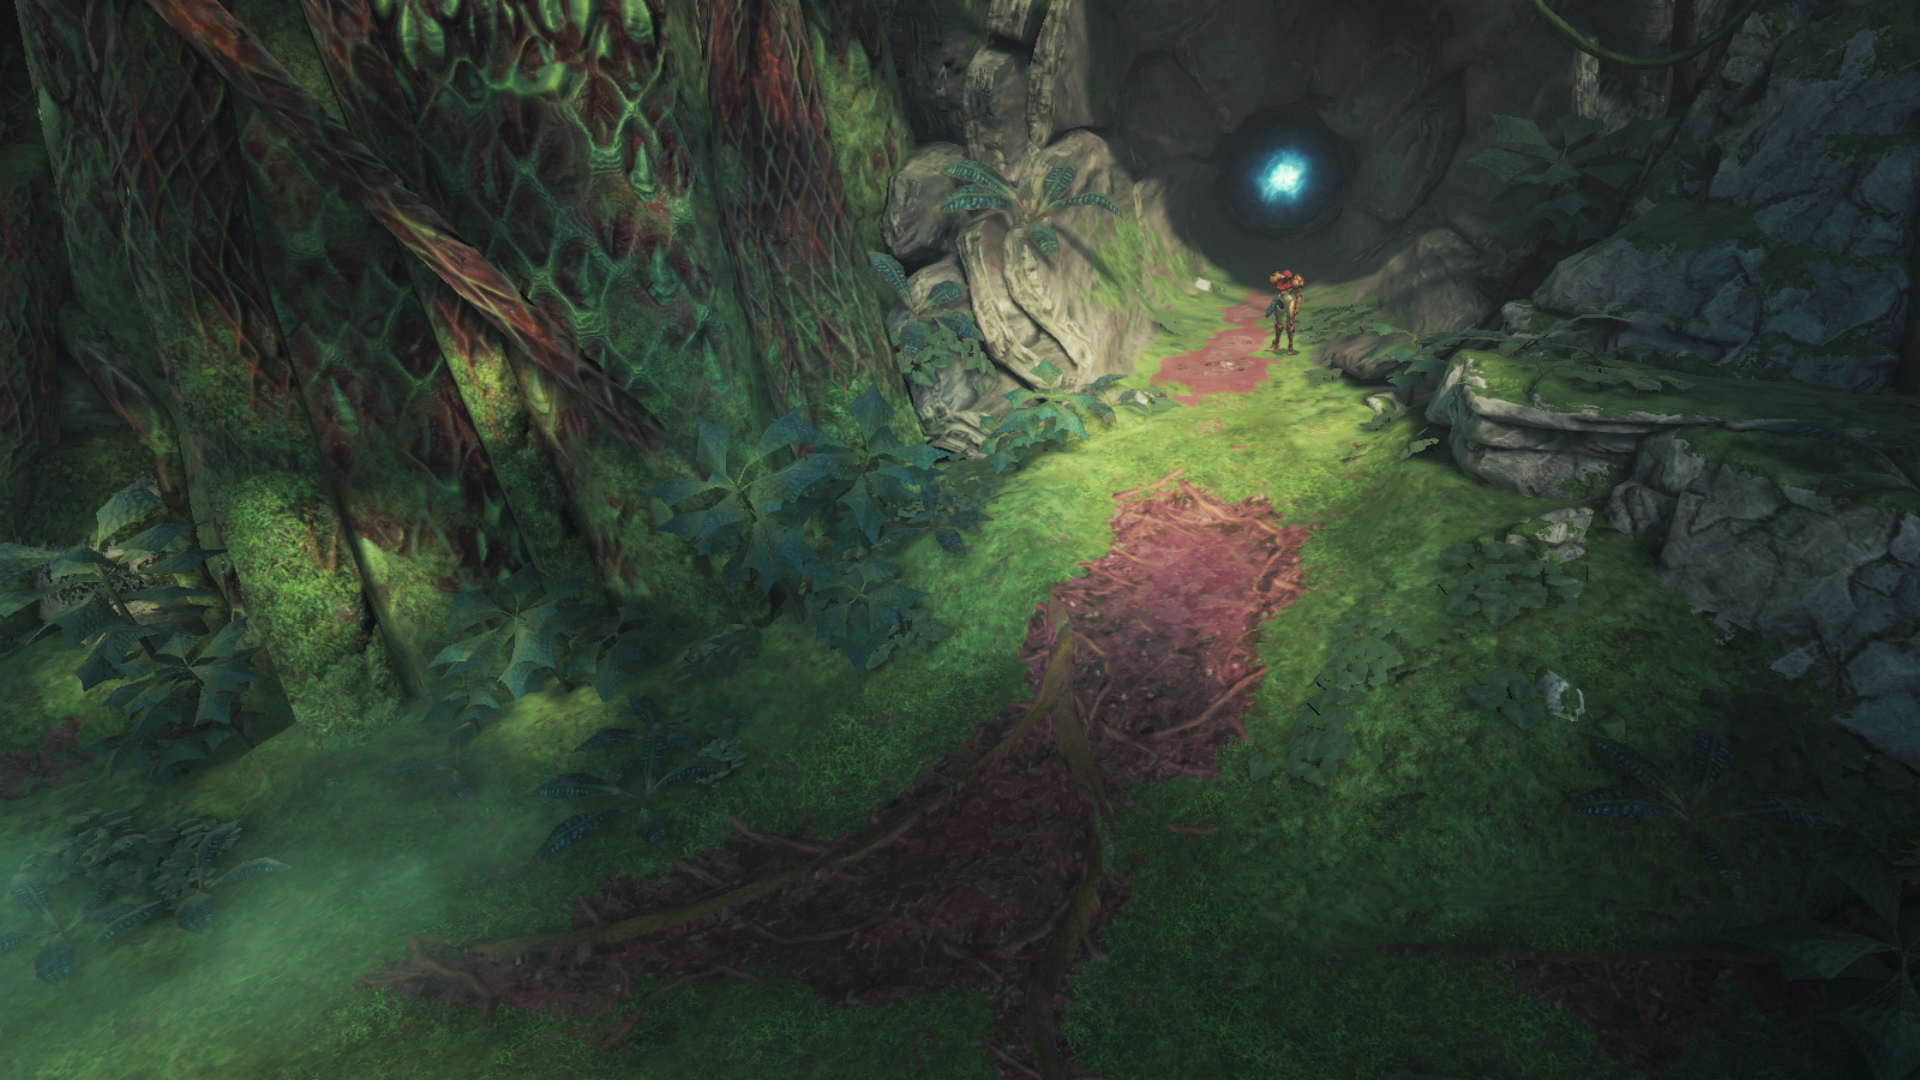 Metroid prime 4 beyond screenshot 17 14